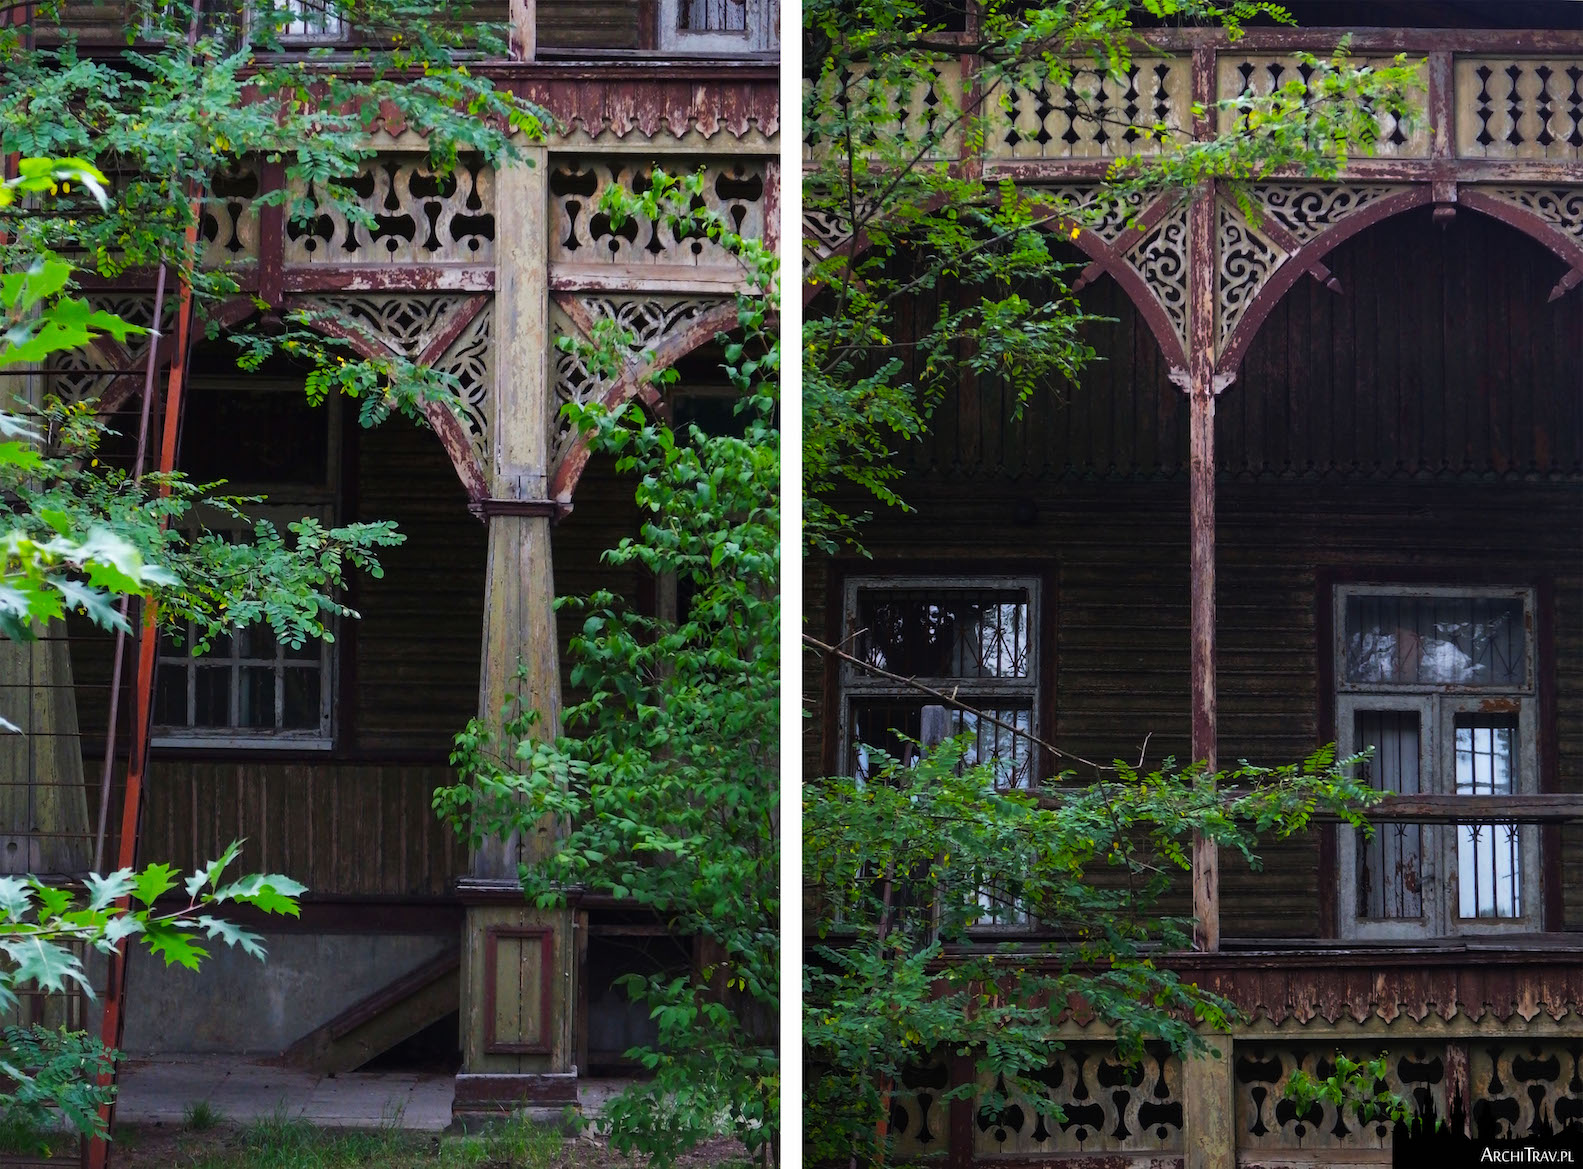 Pensjonat A. Gurewicza tzw willa gurewiczanka, dwa zdjęcia przedstawiające detale budynku w stylu świdermajer